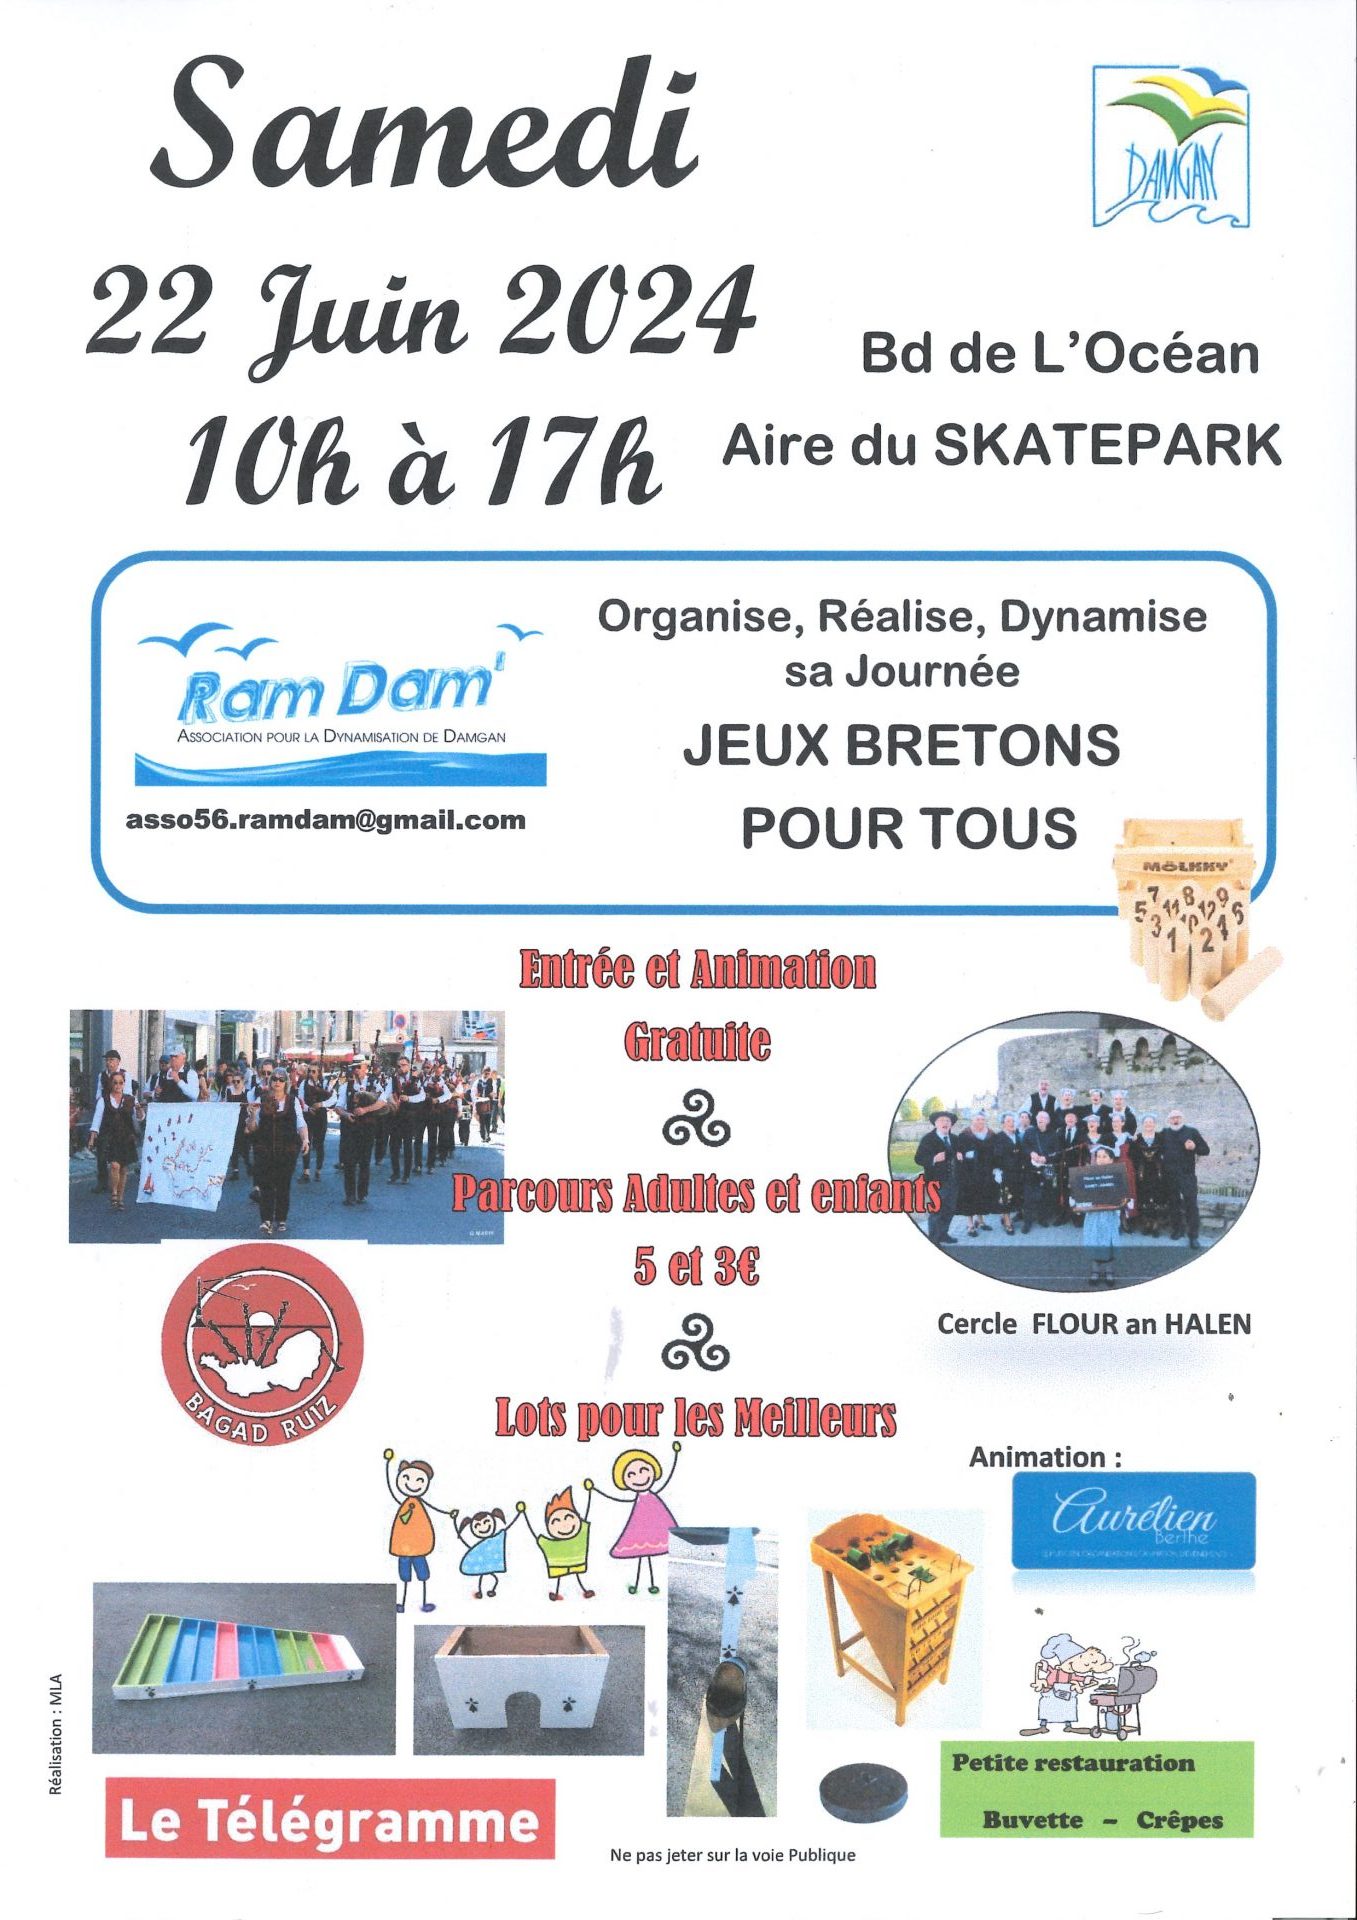 Jeux bretons pour tous Le 22 juin 2024